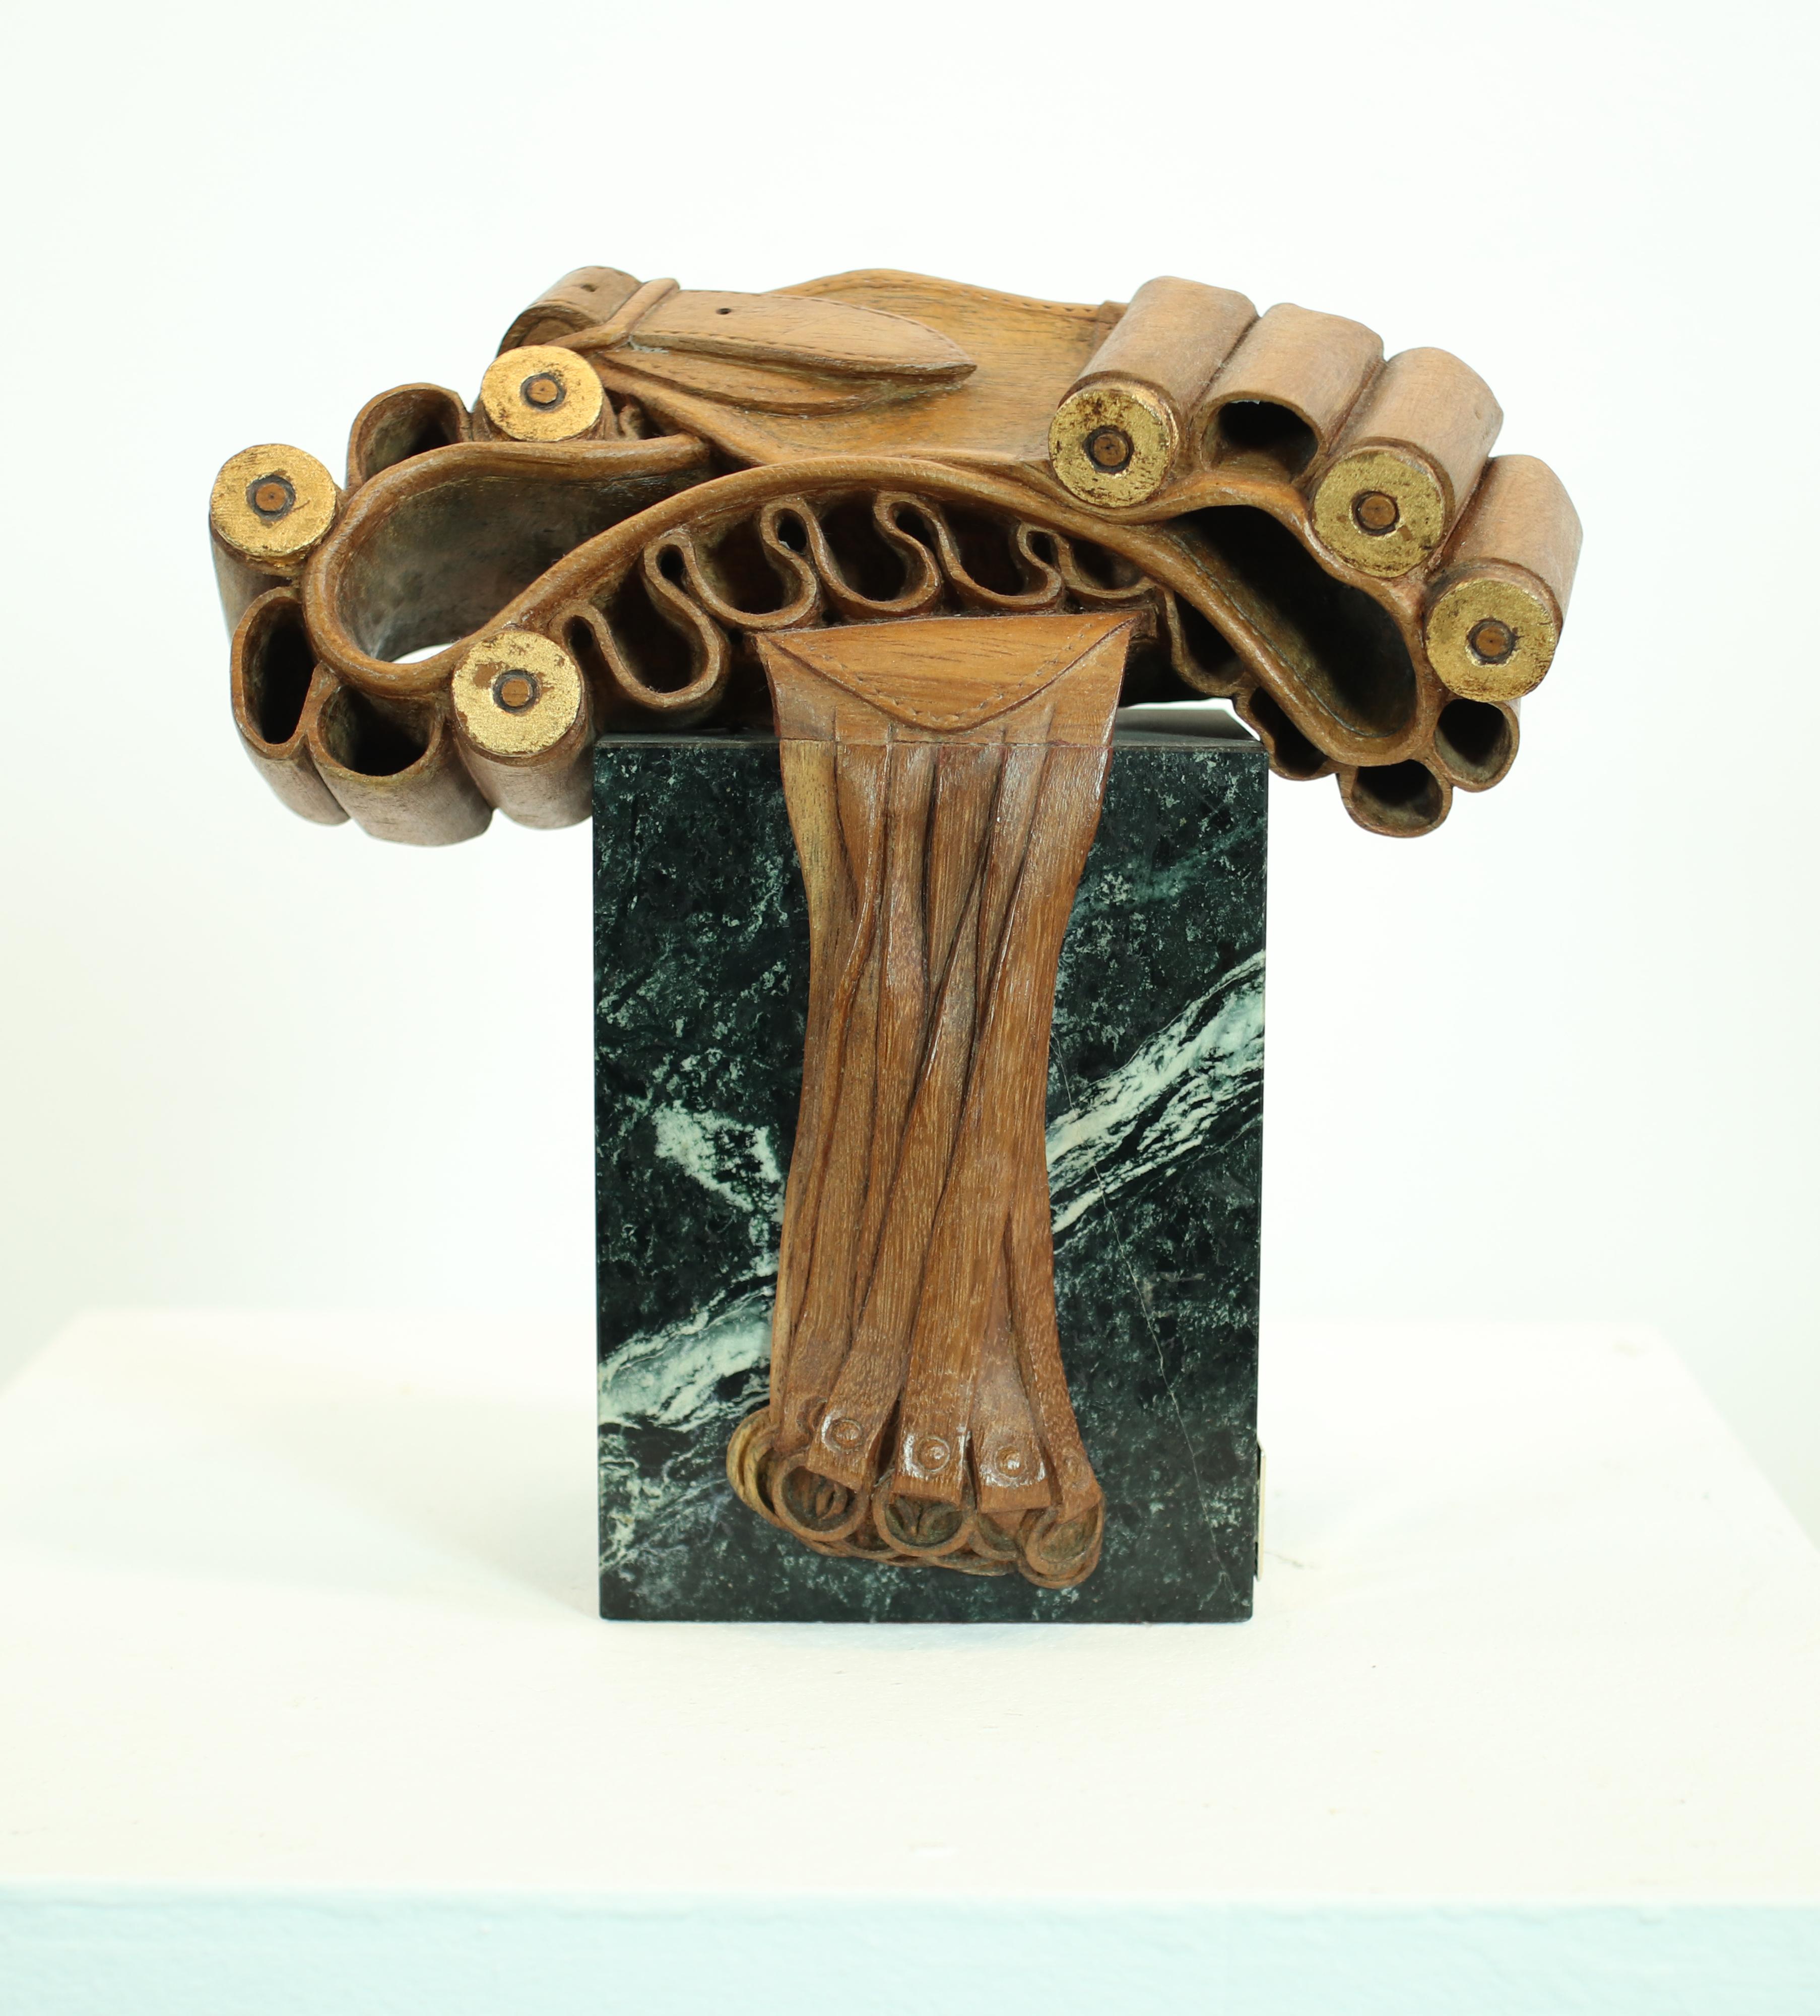  Codina Corona  Caza  cinturón cartucho. madera. escultura original realista  - Sculpture Contemporáneo de Josep Maria Codina Corona